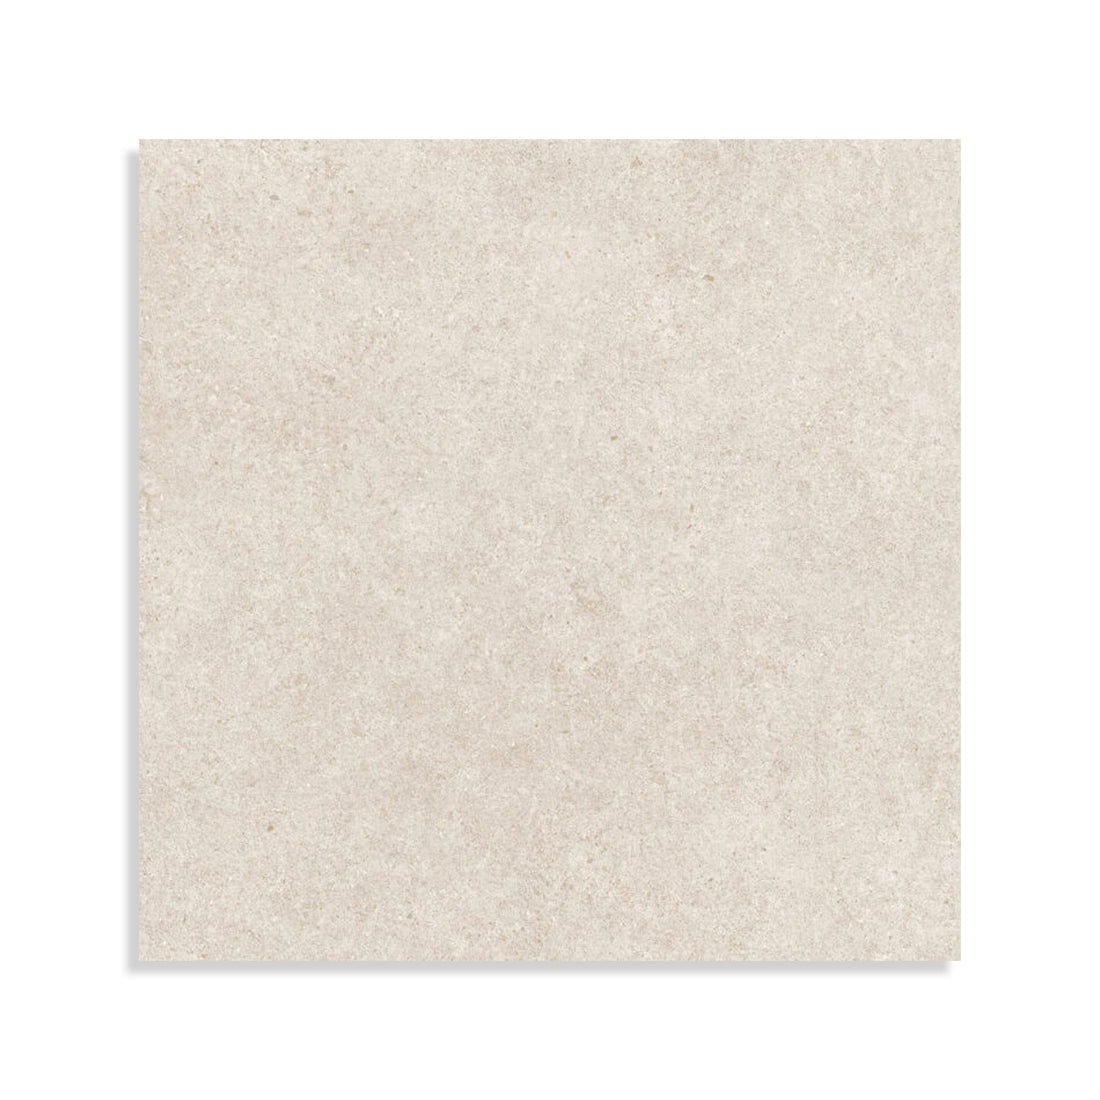 Minoli - Boost Stone White Matt, 60 x 60cm (BST1290) - Tiles &amp; Stone To You